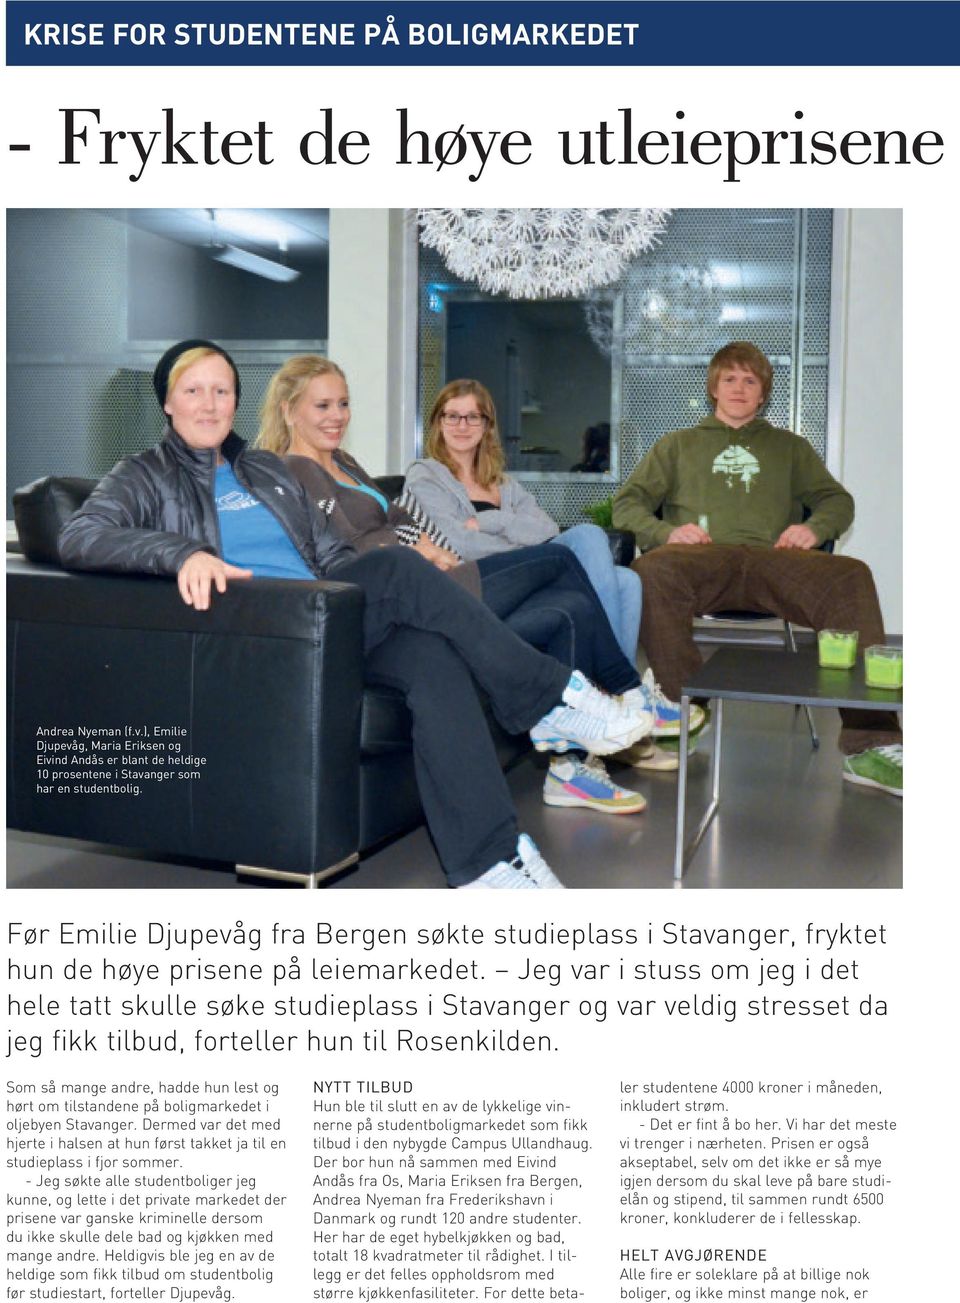 Før Emilie Djupevåg fra Bergen søkte studieplass i Stavanger, fryktet hun de høye prisene på leiemarkedet.